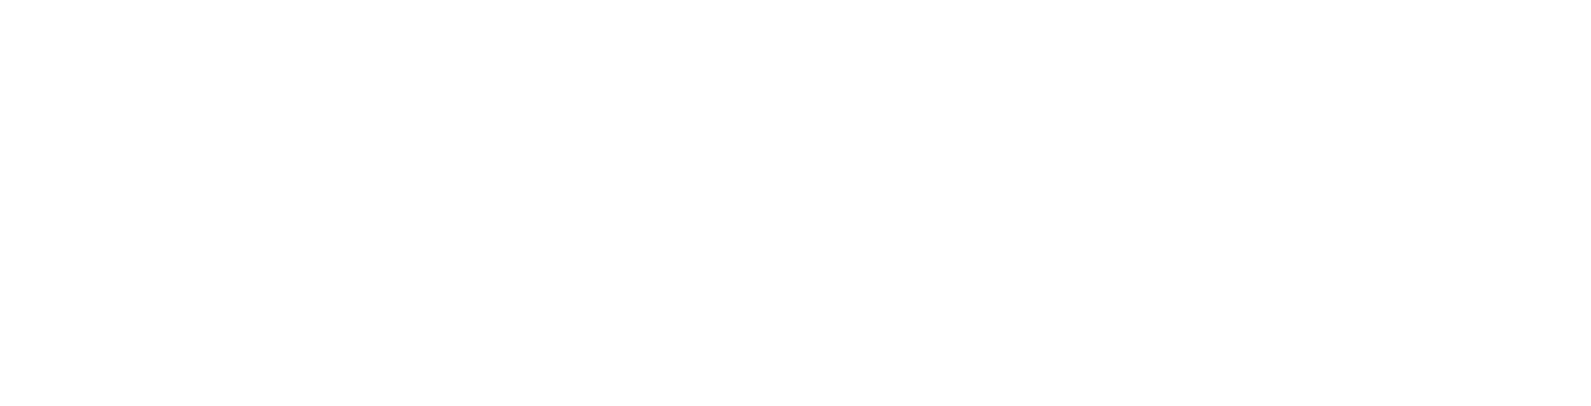 Valmet
 Logo groß für dunkle Hintergründe (transparentes PNG)